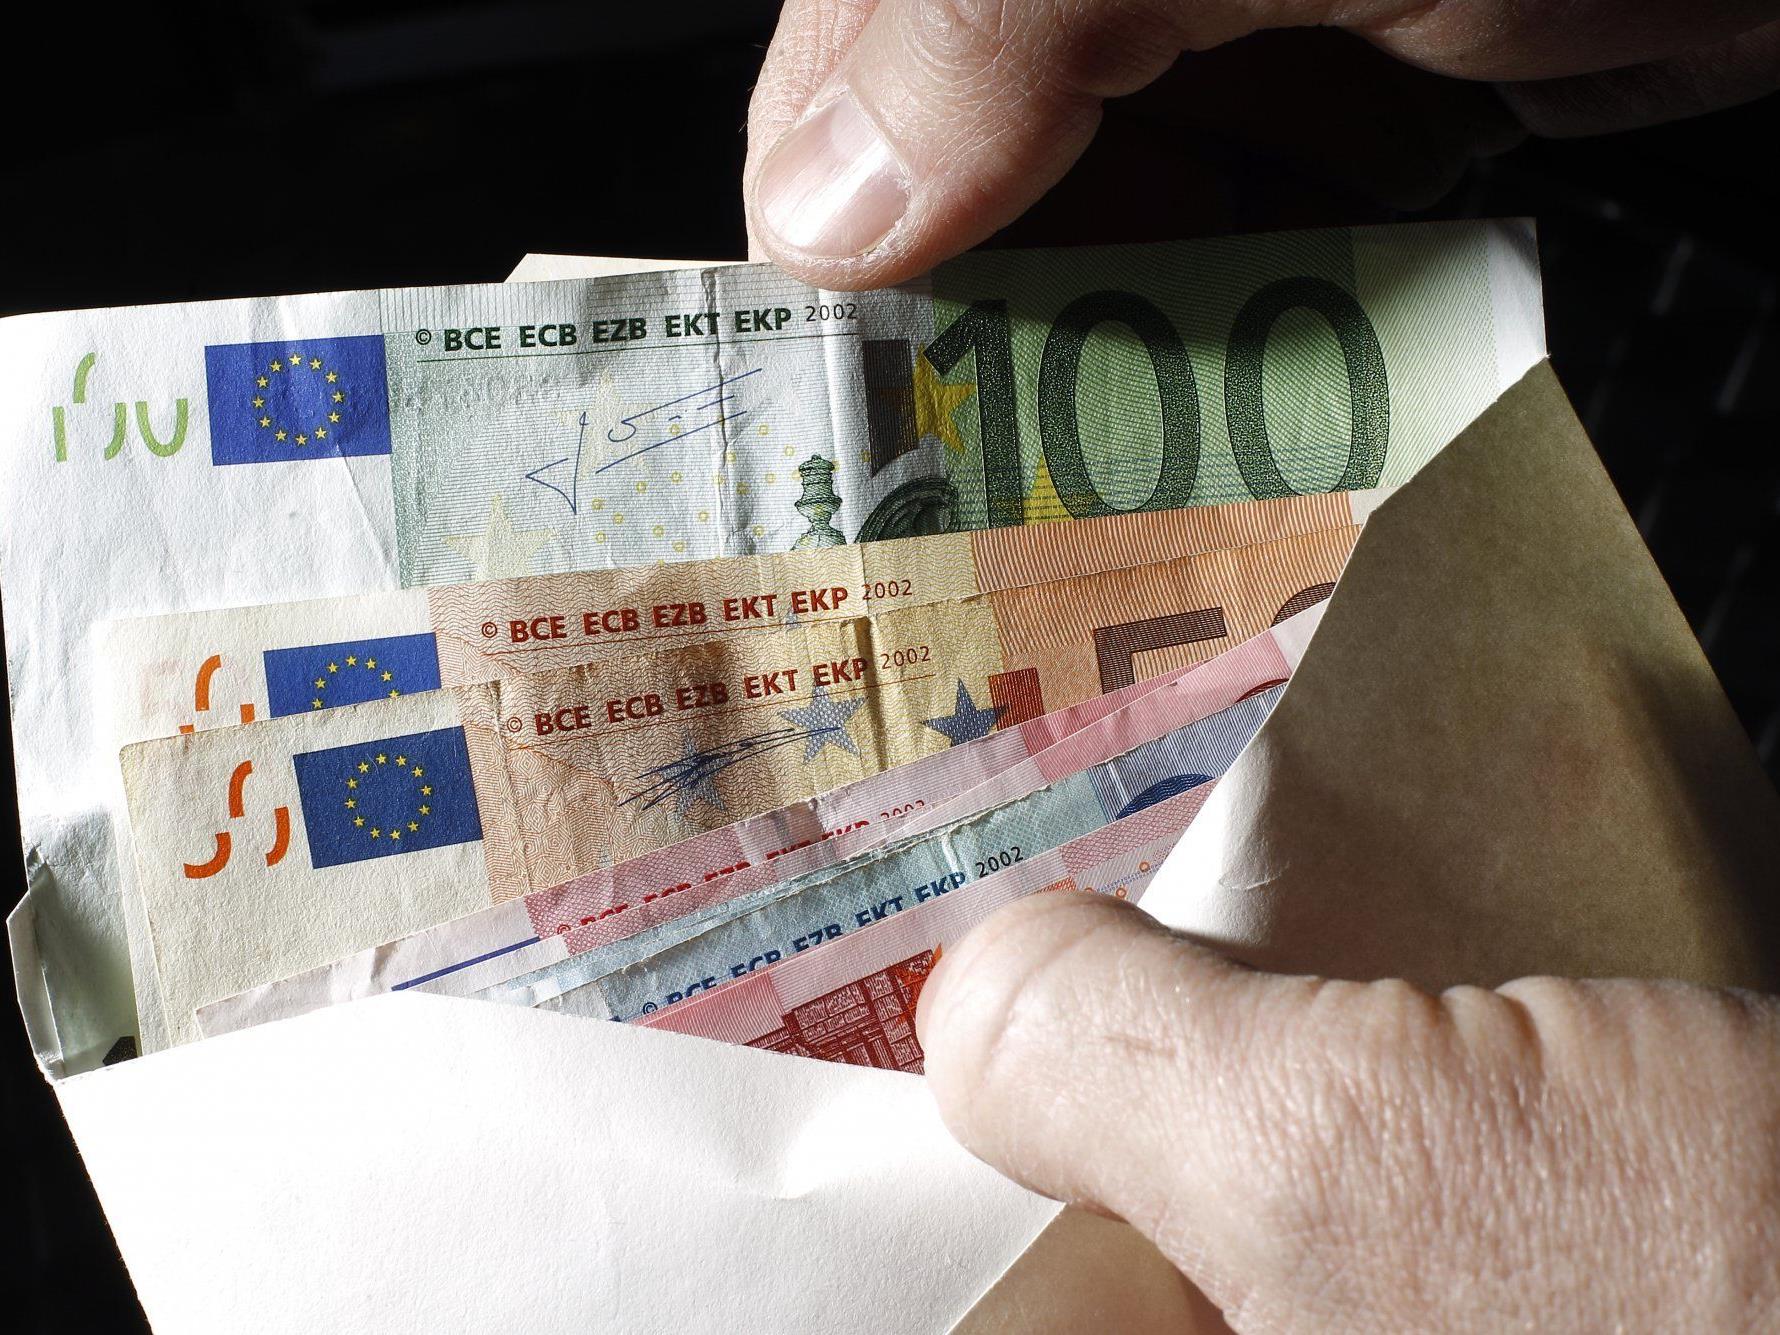 Kuverts mit 10.000 bis 20.000 Euro werden in Braunschweig anonym gespendet.